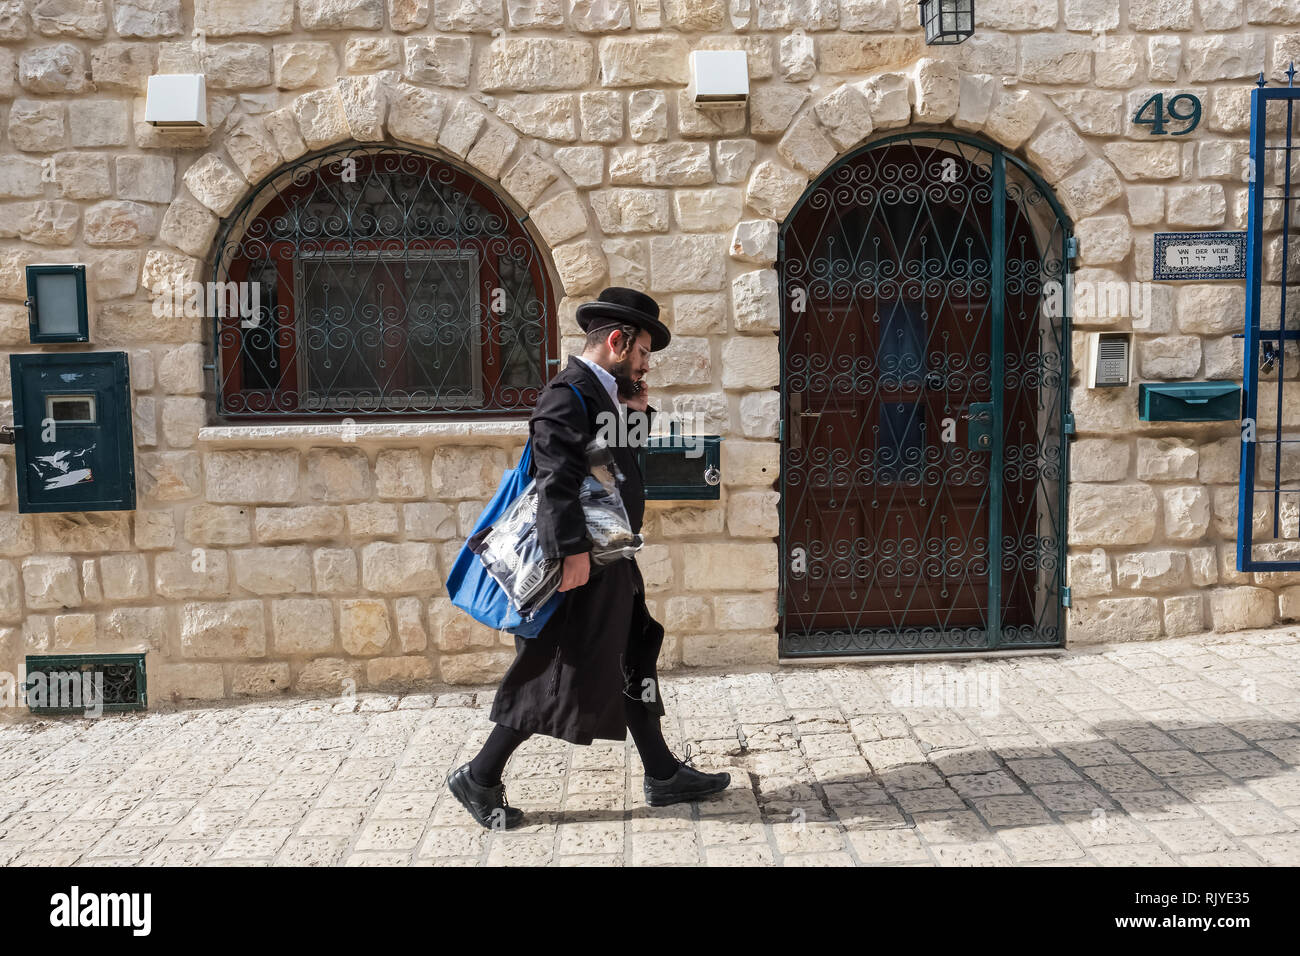 Tzfat, Israël - 18 novembre 2018 : l'homme juif orthodoxe en marchant dans la rue de la ville de Safed. Tzfat a une réputation de la ville de la Kabbale. Banque D'Images